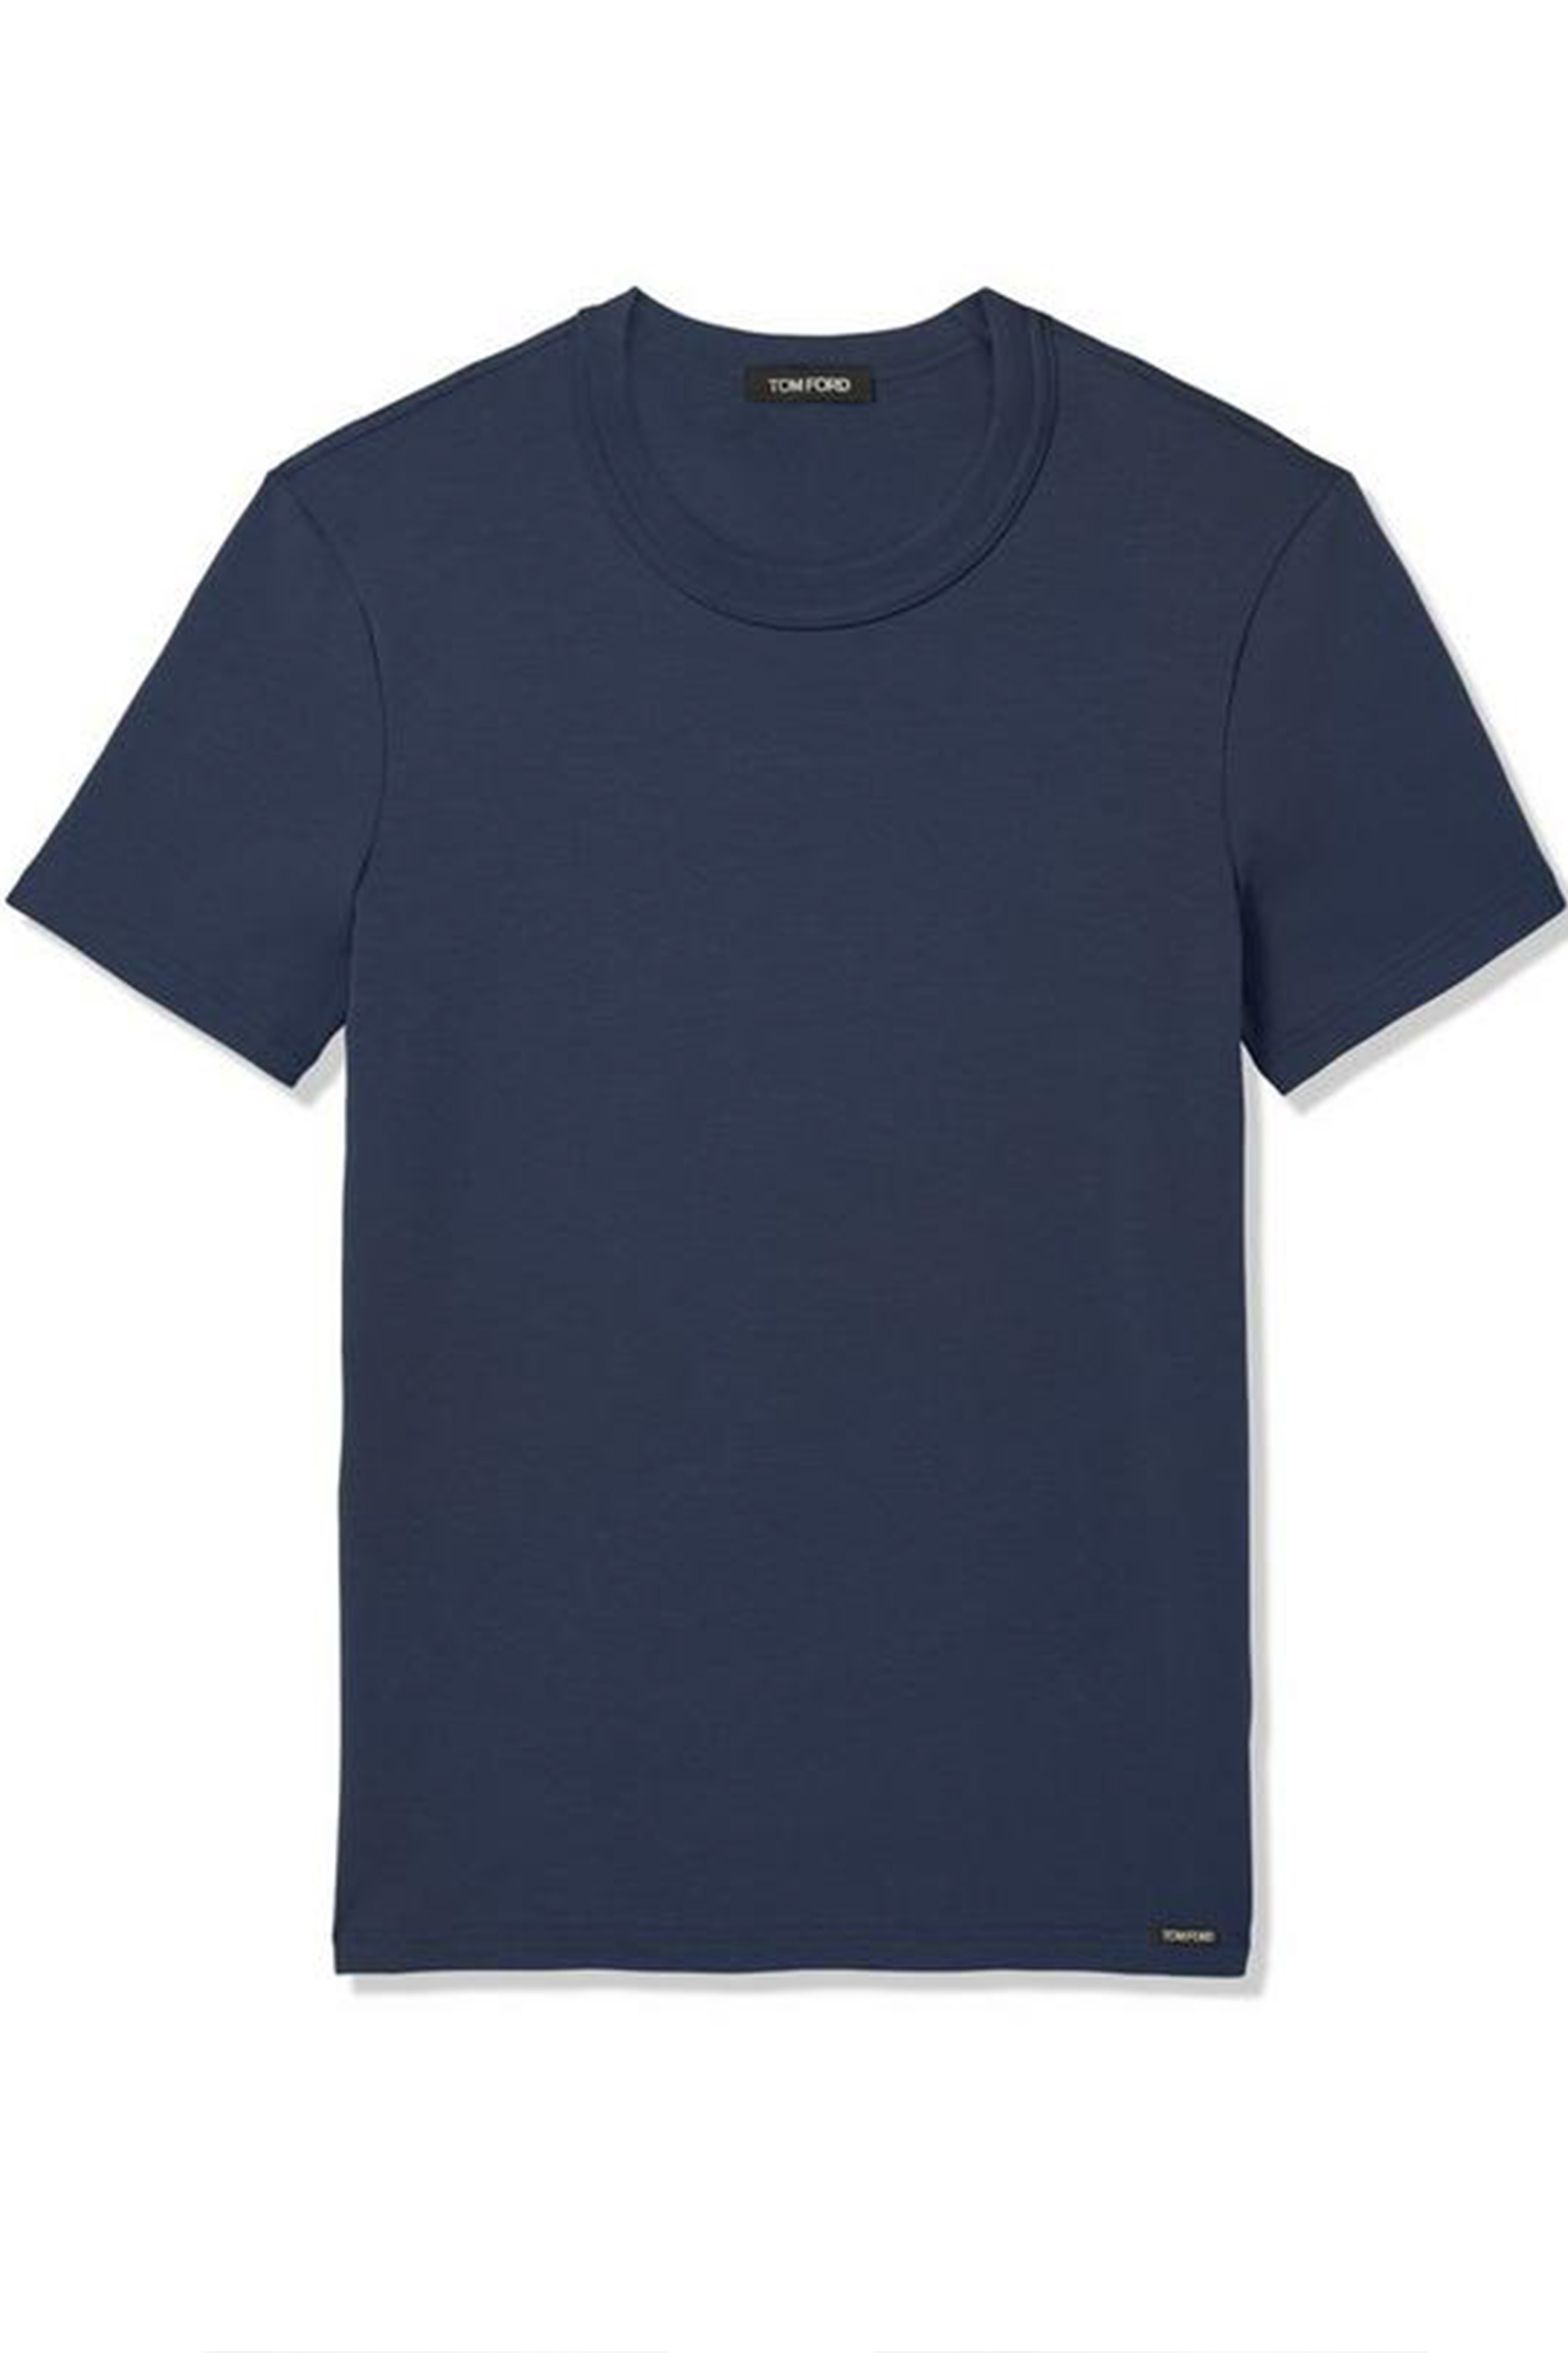 TOM FORD Cotton Crew Neck T-Shirt | T-Shirts | T-Shirts & Poloshirts ...